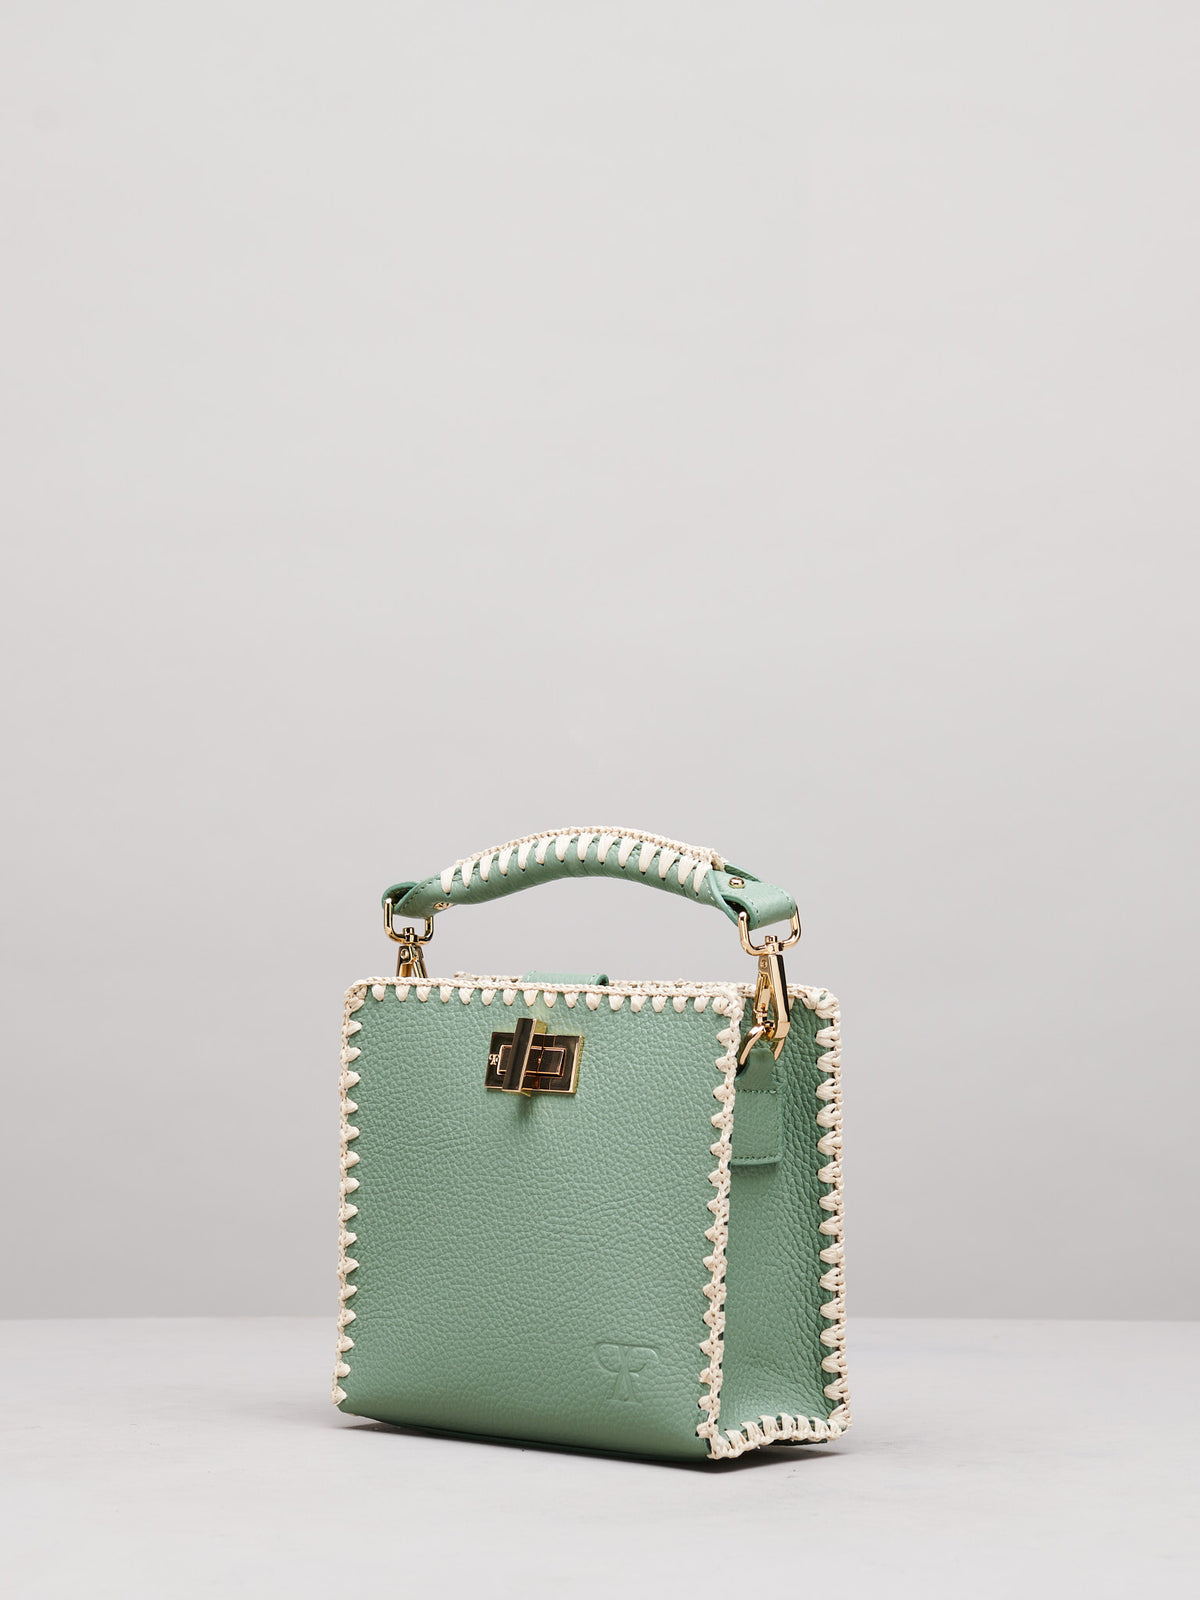 Sylvia Small Handbag in Mint